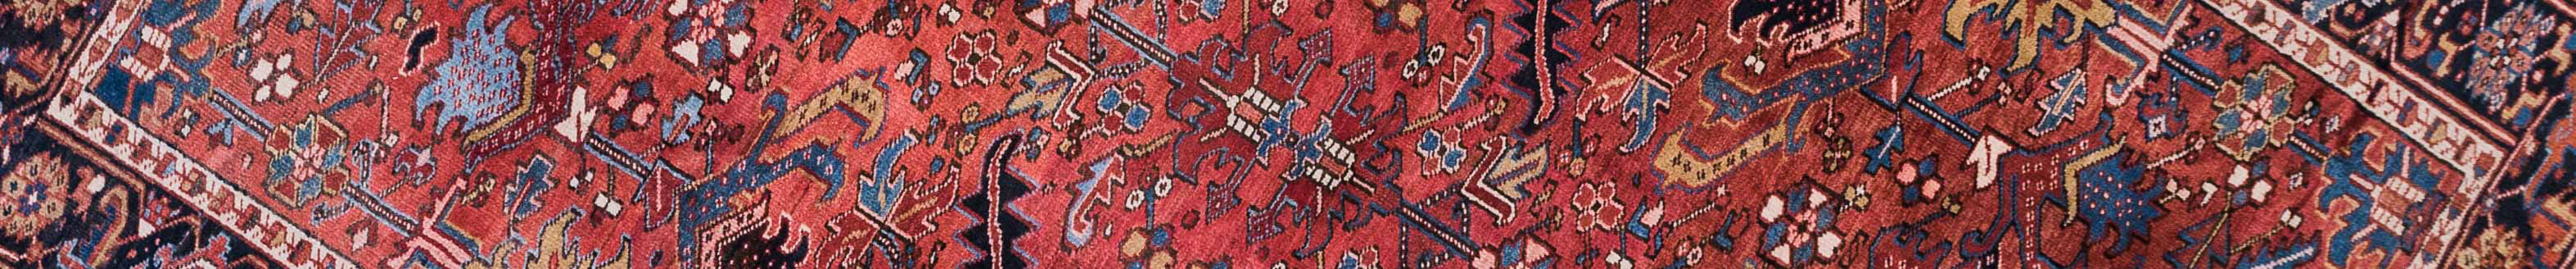 Gravan Persian Carpet Rug N1Carpet Canada Montreal Tapis Persan 3200